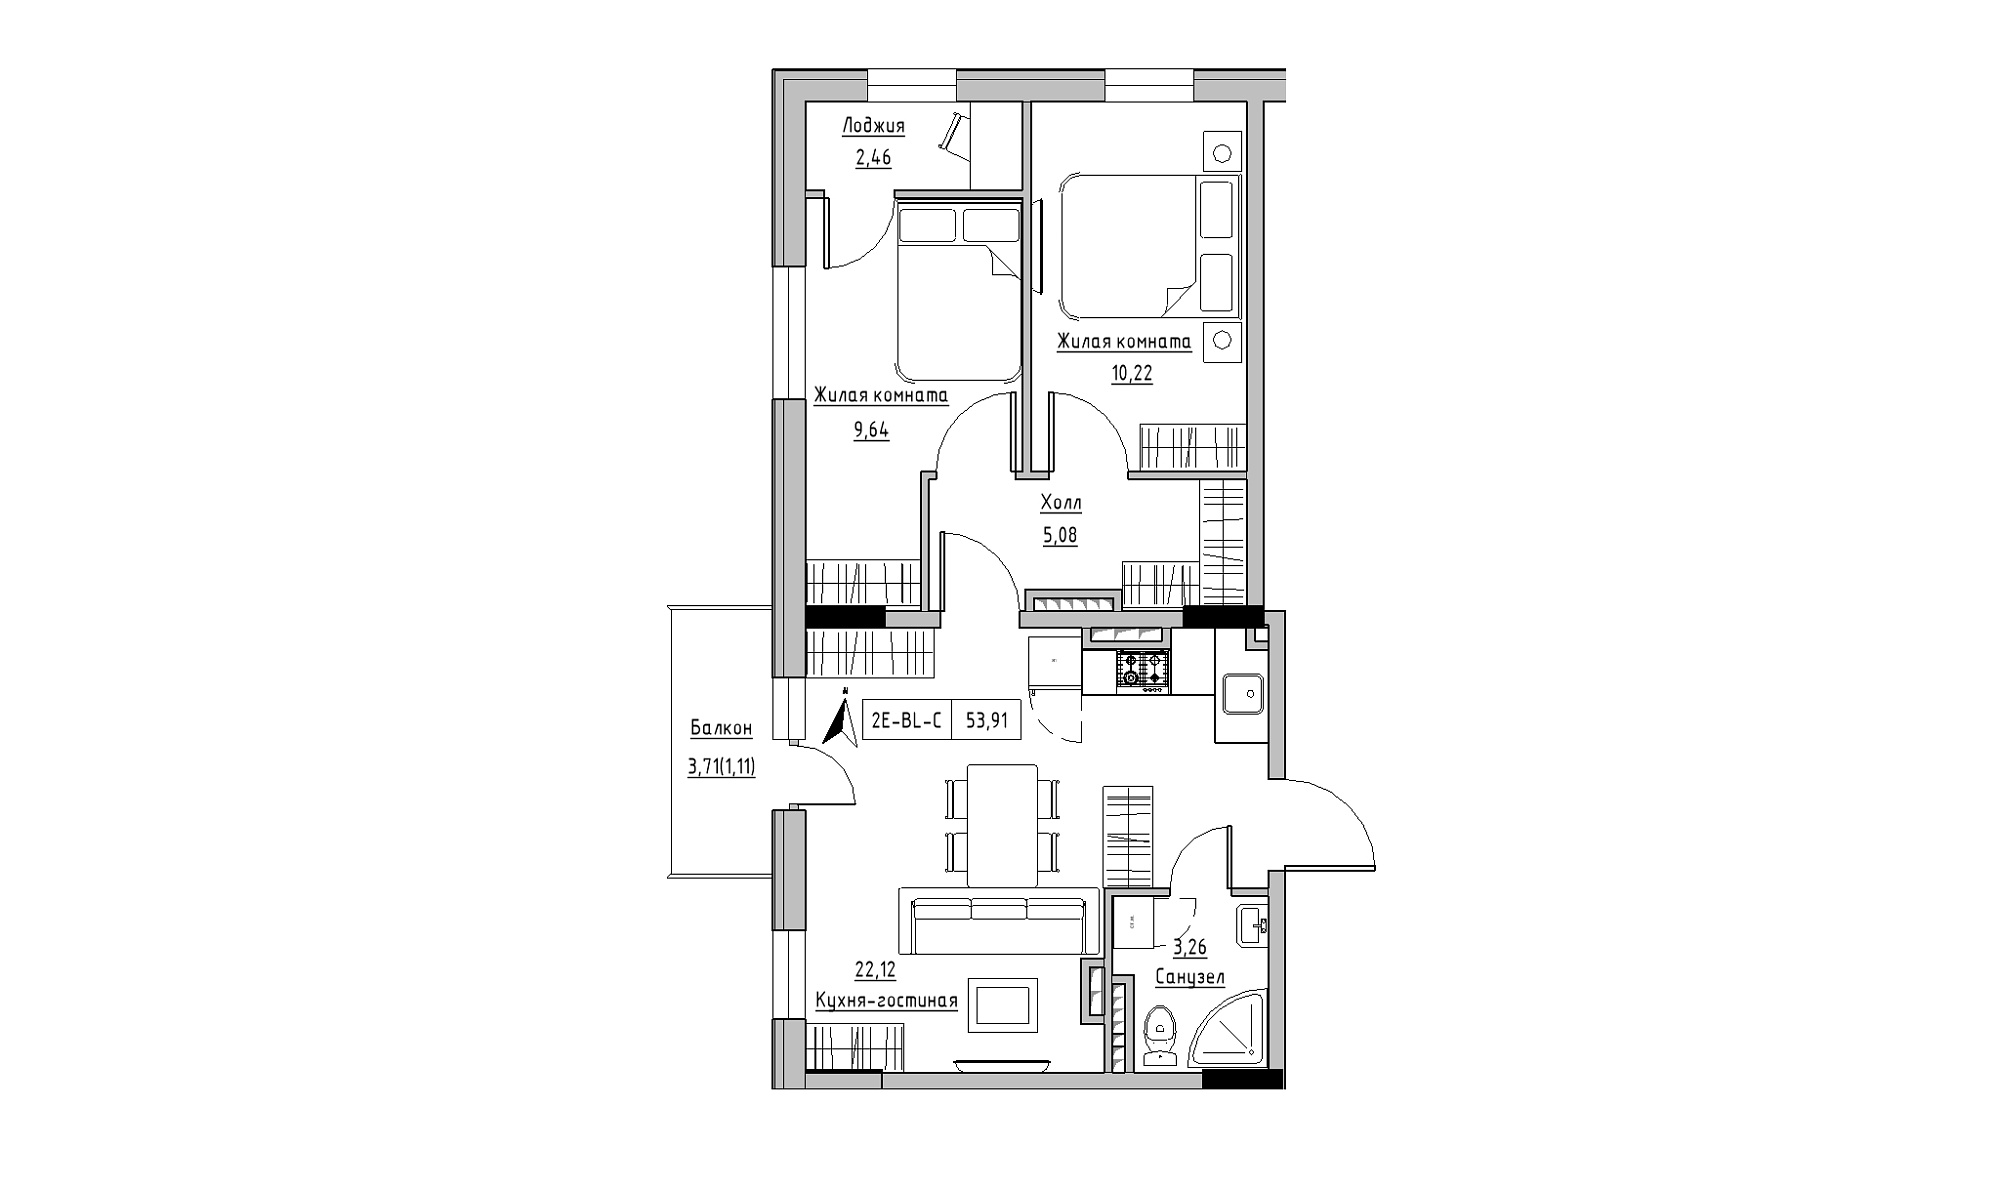 Планування 2-к квартира площею 53.91м2, KS-025-05/0005.